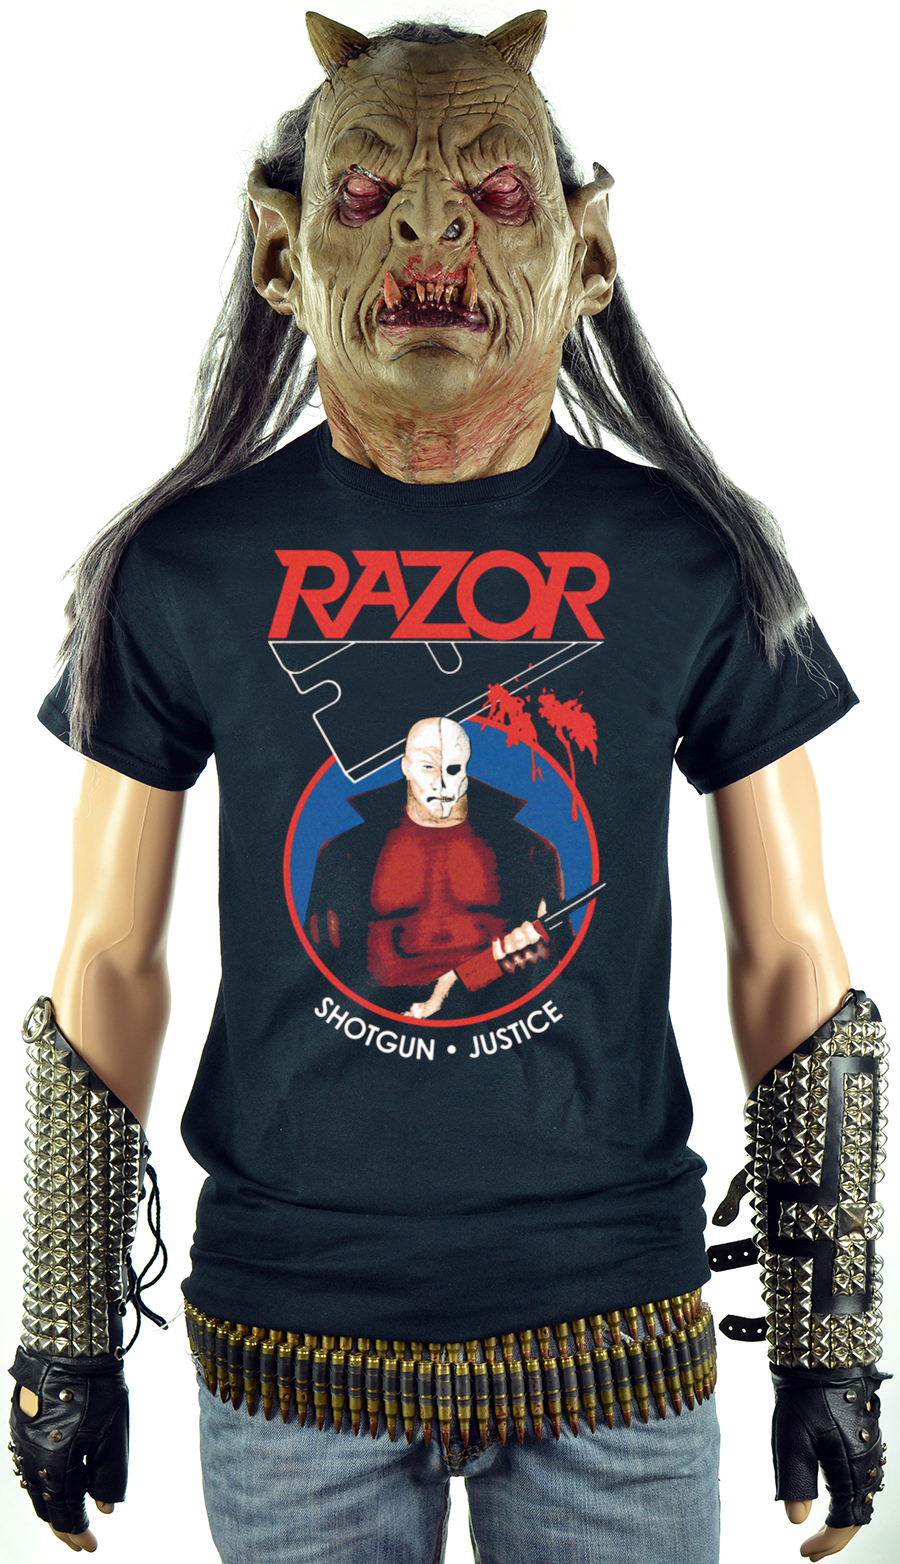 RAZOR - Shotgun Justice (T-Shirt)